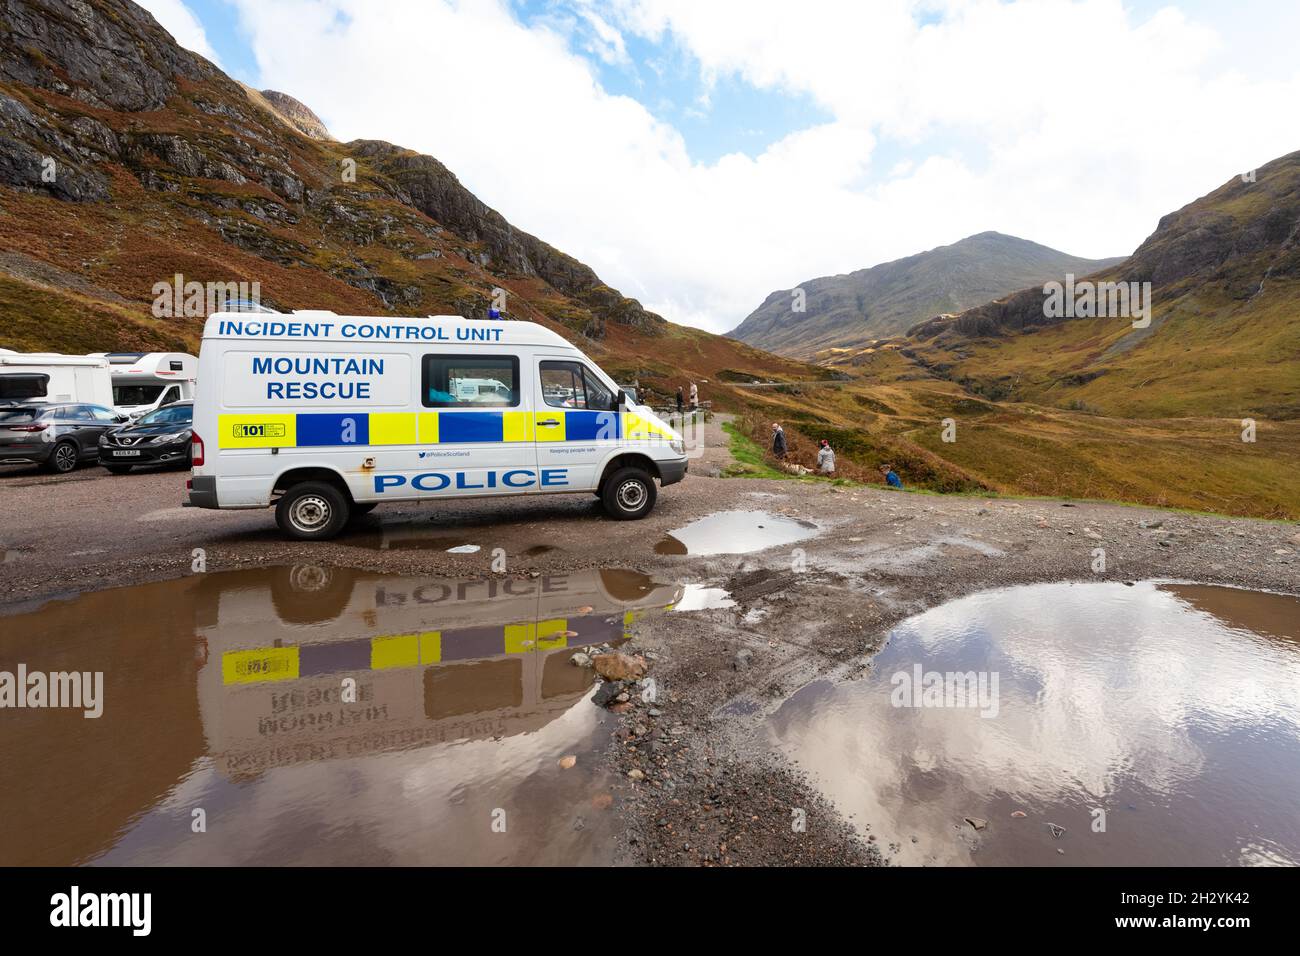 Polizei und Glencoe Mountain Rescue Fahrzeuge am Three Sisters Viewpoint, Glen Coe, Scottish Highlands, Schottland, Großbritannien Stockfoto